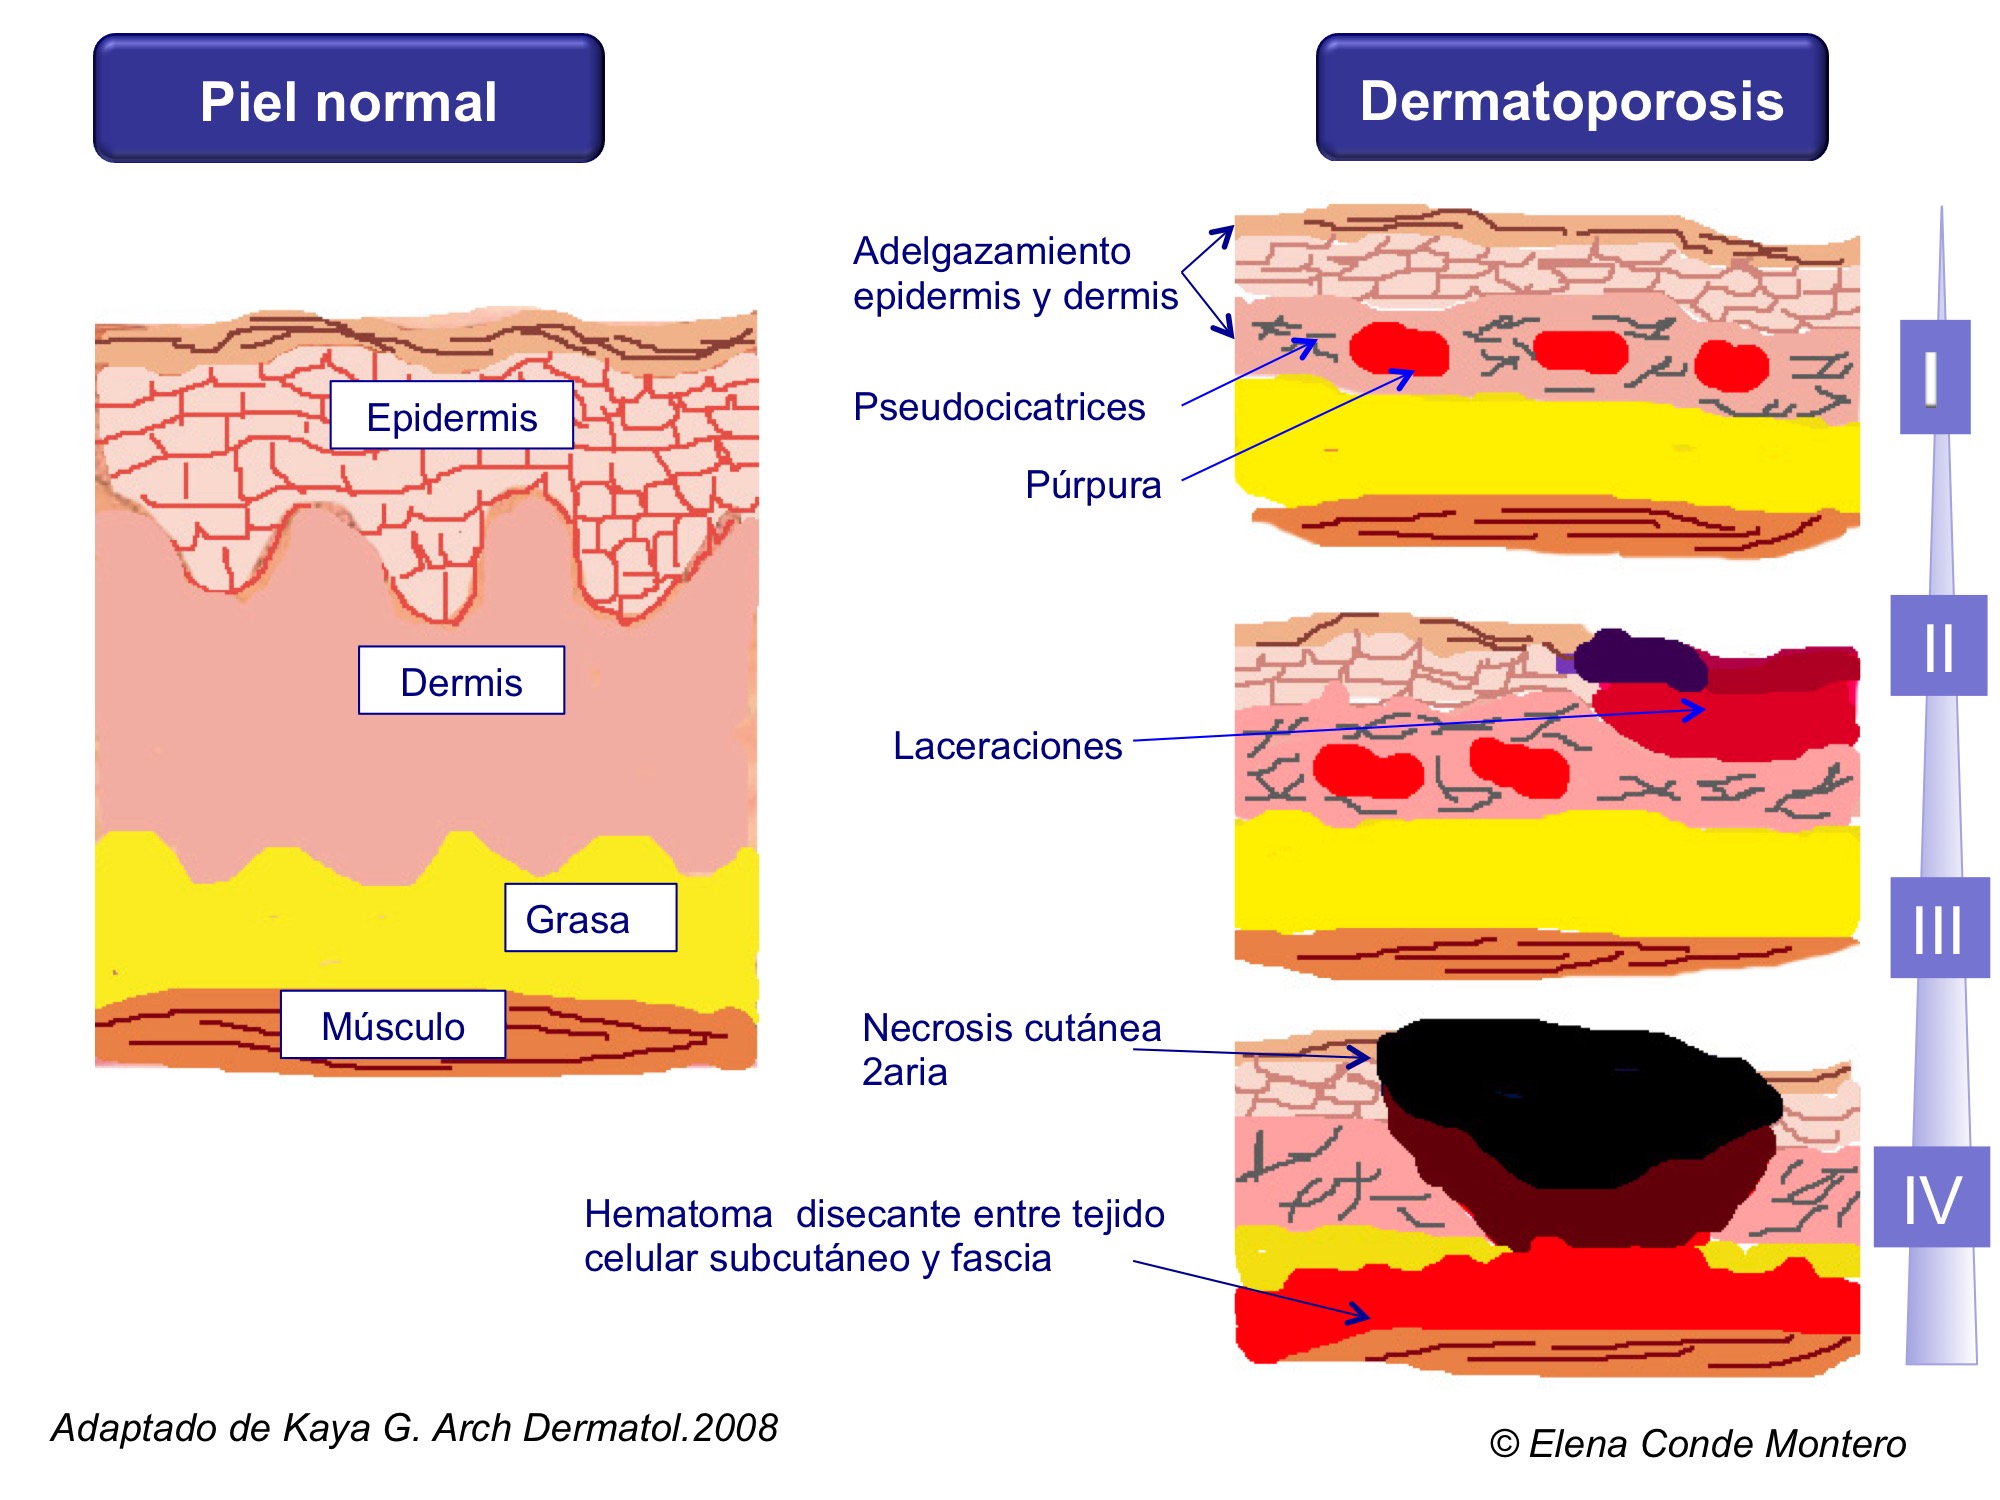 Grados de afectación de la dermatoporosis